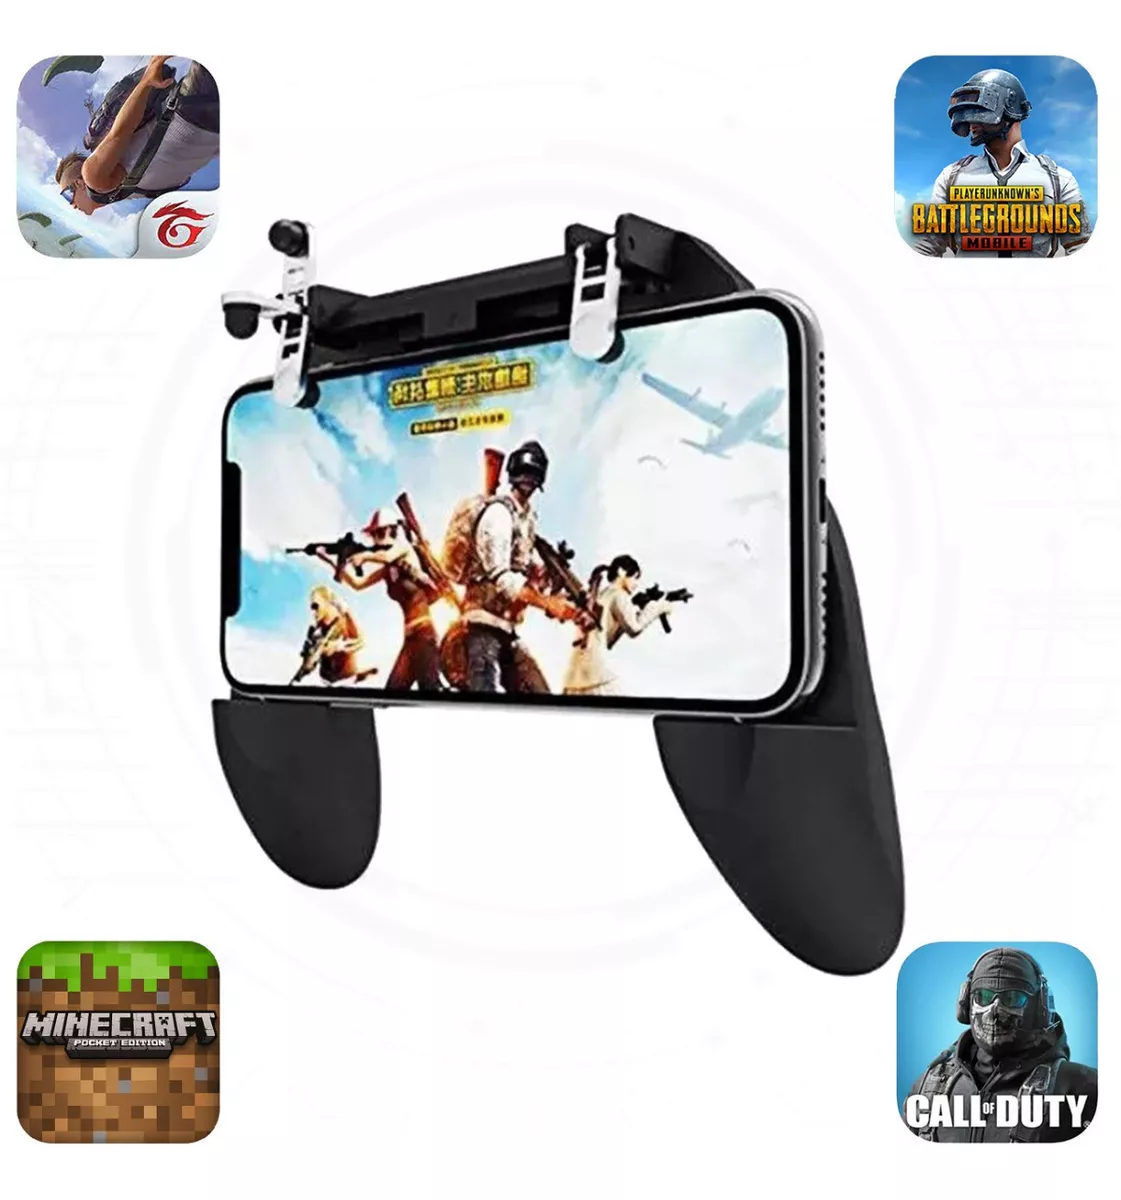 Kit 1 Gamepad Controle Suporte + 1 Par Gatilhos R1 L1 Celular Jogo Joystick  Jogo de Tiro Call Of Duty Pubg Free Fire